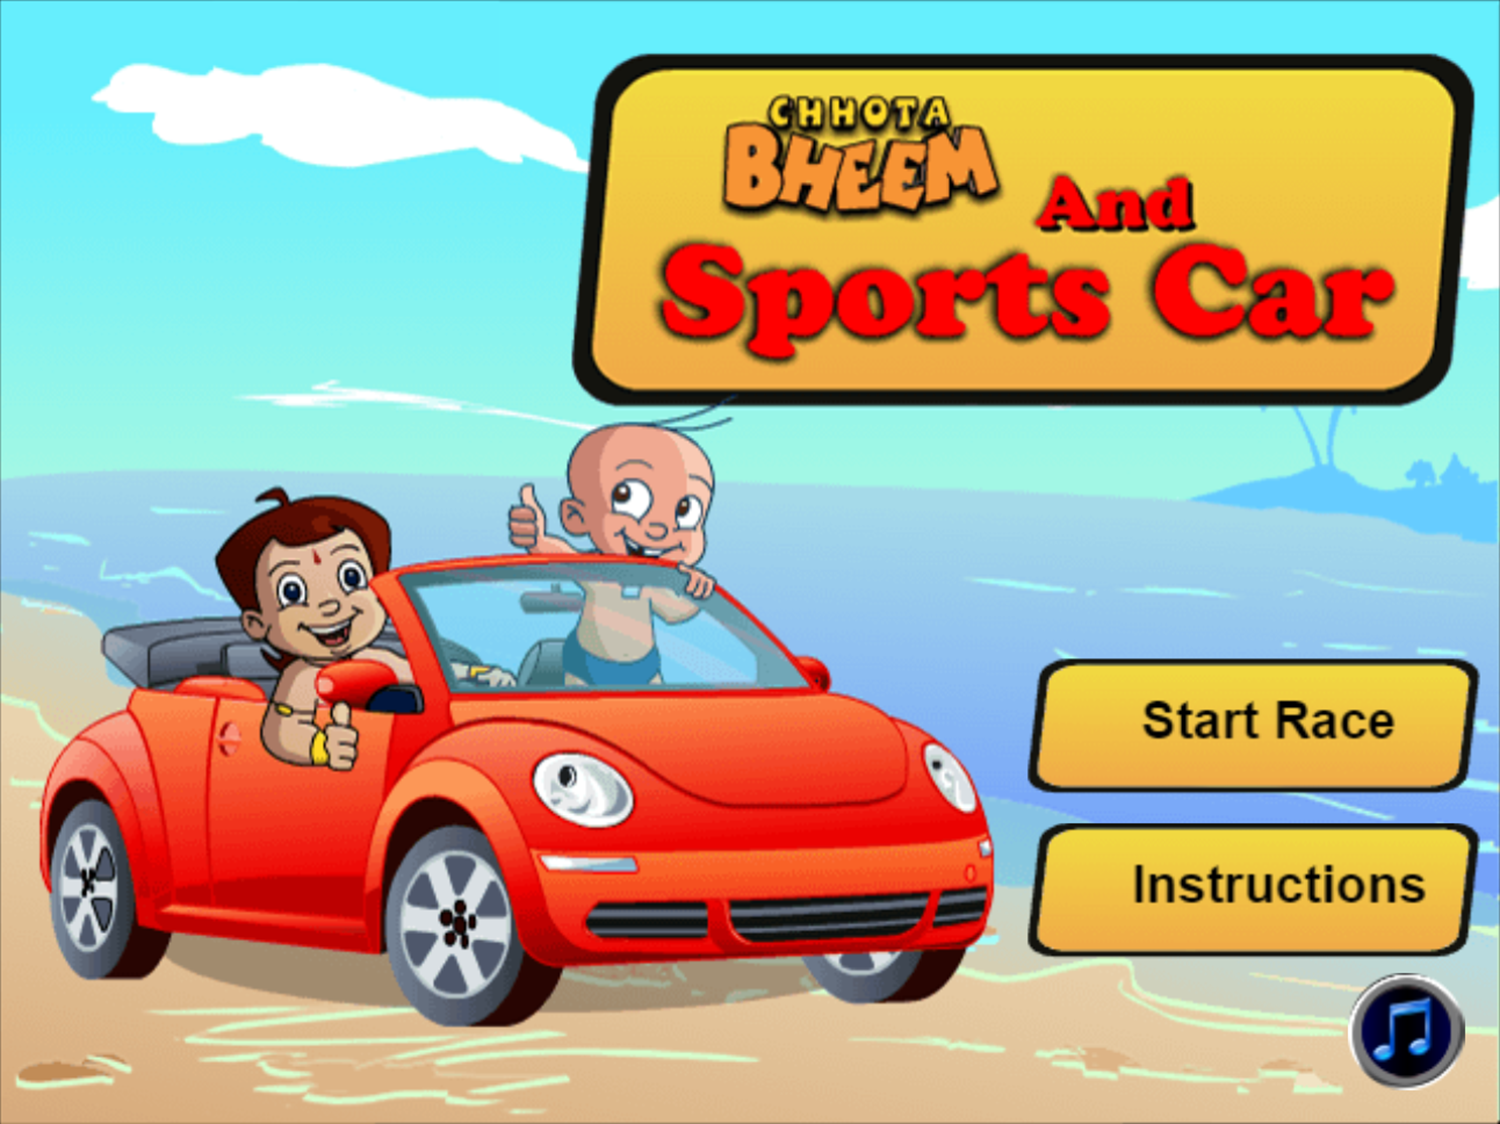 Chhota Bheem And Sports Car Game Welcome Screen Screenshot.